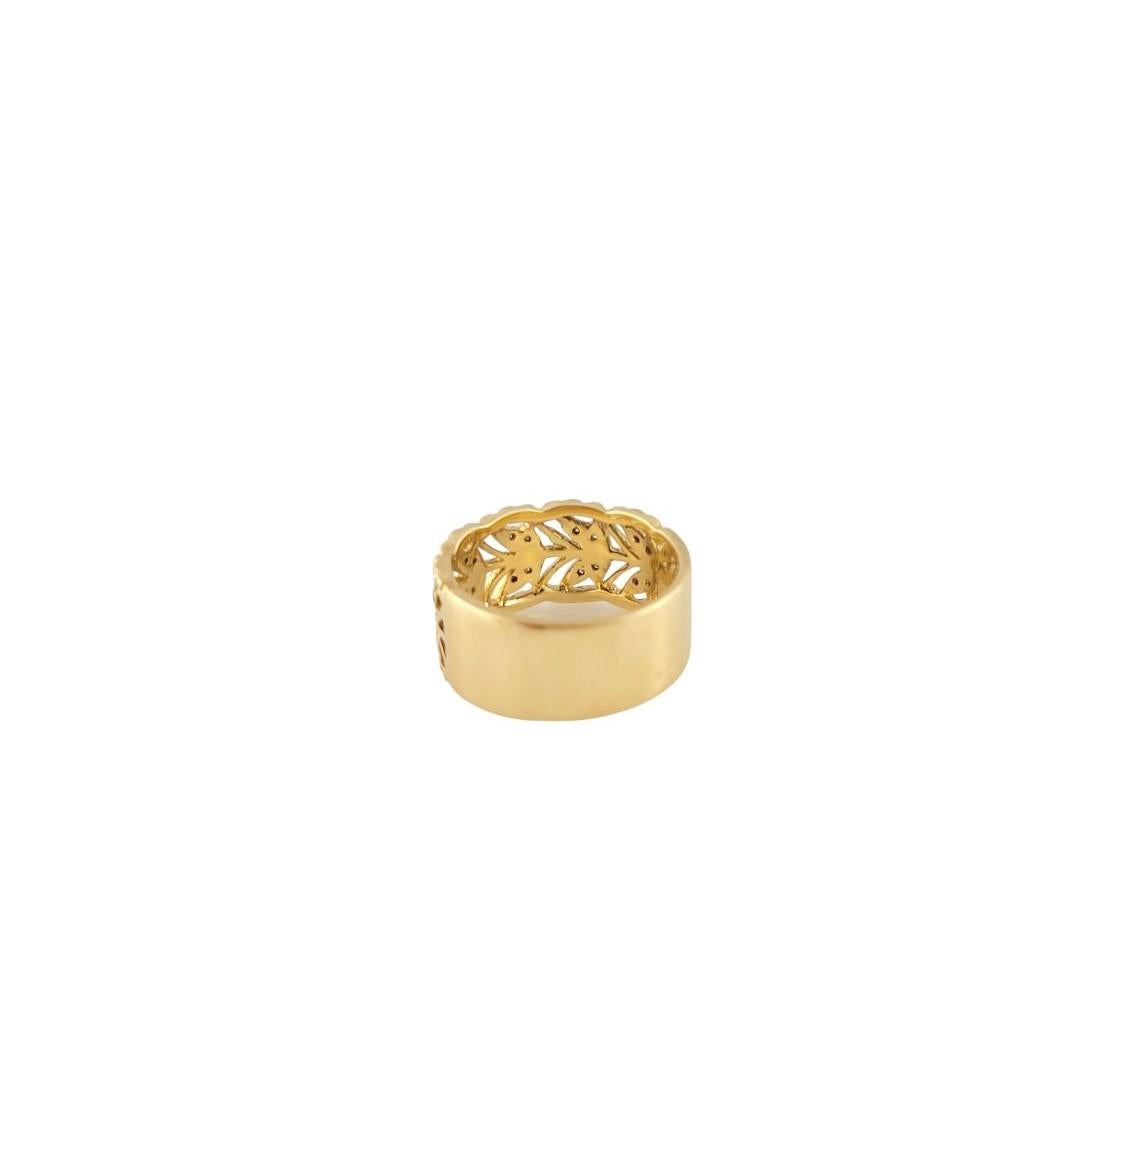 Dieses elegante Band ist mit 20 runden Diamanten im Brillantschliff besetzt und in klassisches 18-karätiges Gelbgold gefasst.  Breite: 10 mm.

Schaft: 9 mm.

Ungefähres Gesamtgewicht der Diamanten:  .10 ct.

Farbe des Diamanten:  G-H

Reinheit des